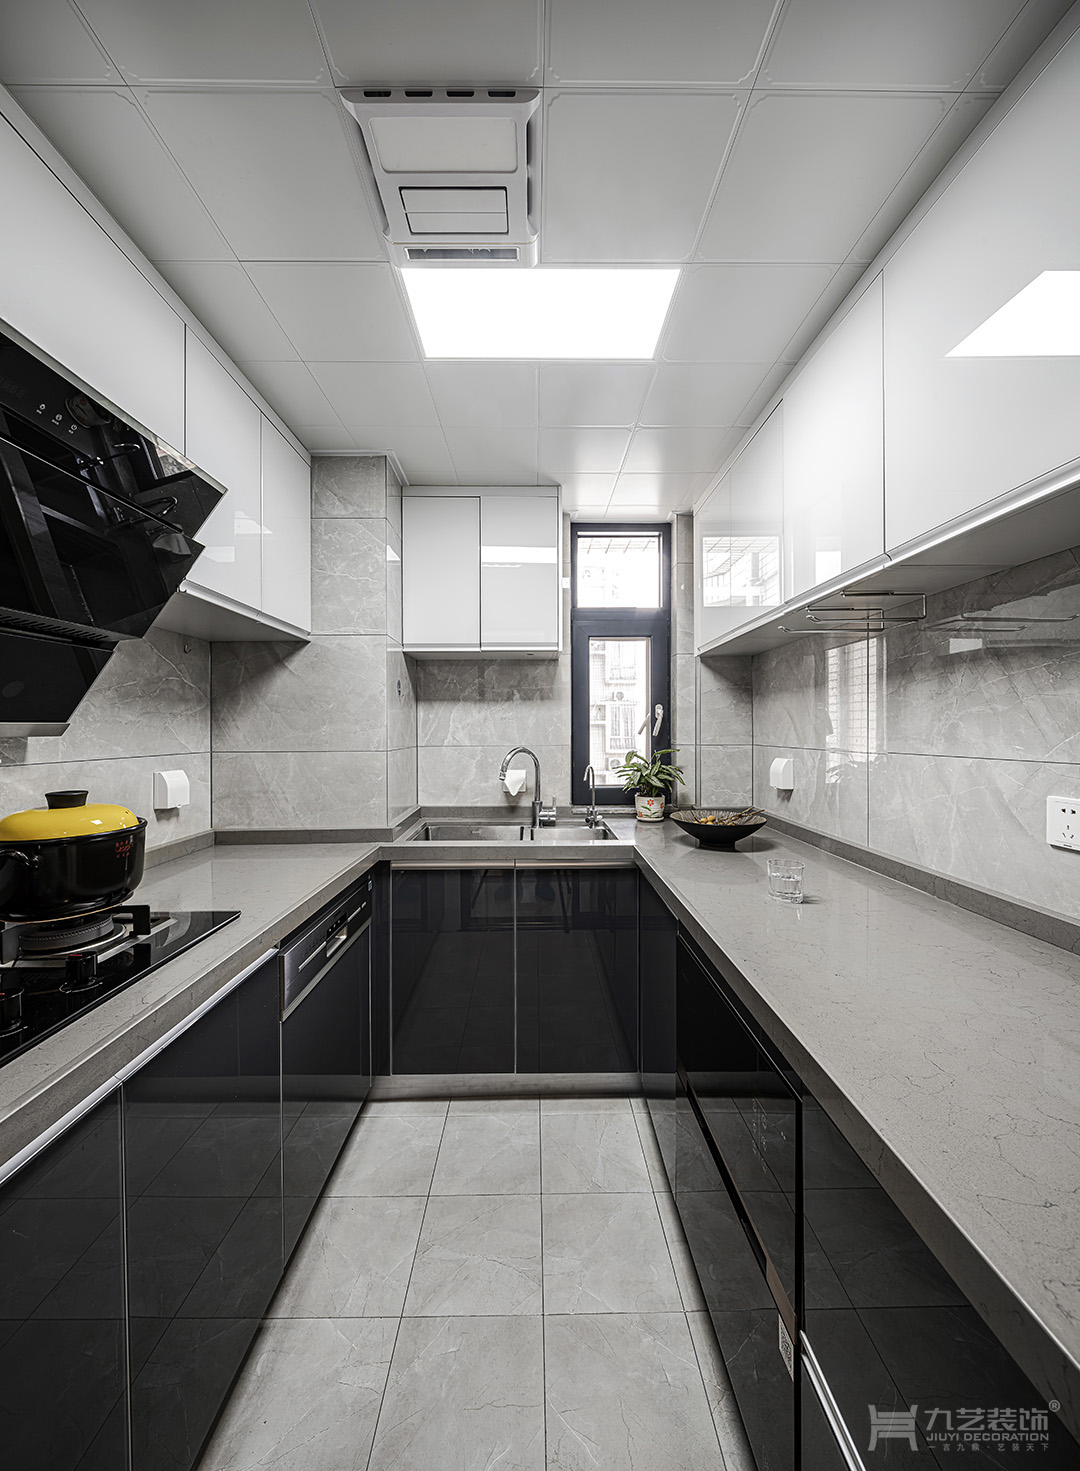 黑白色调的现代简洁厨房